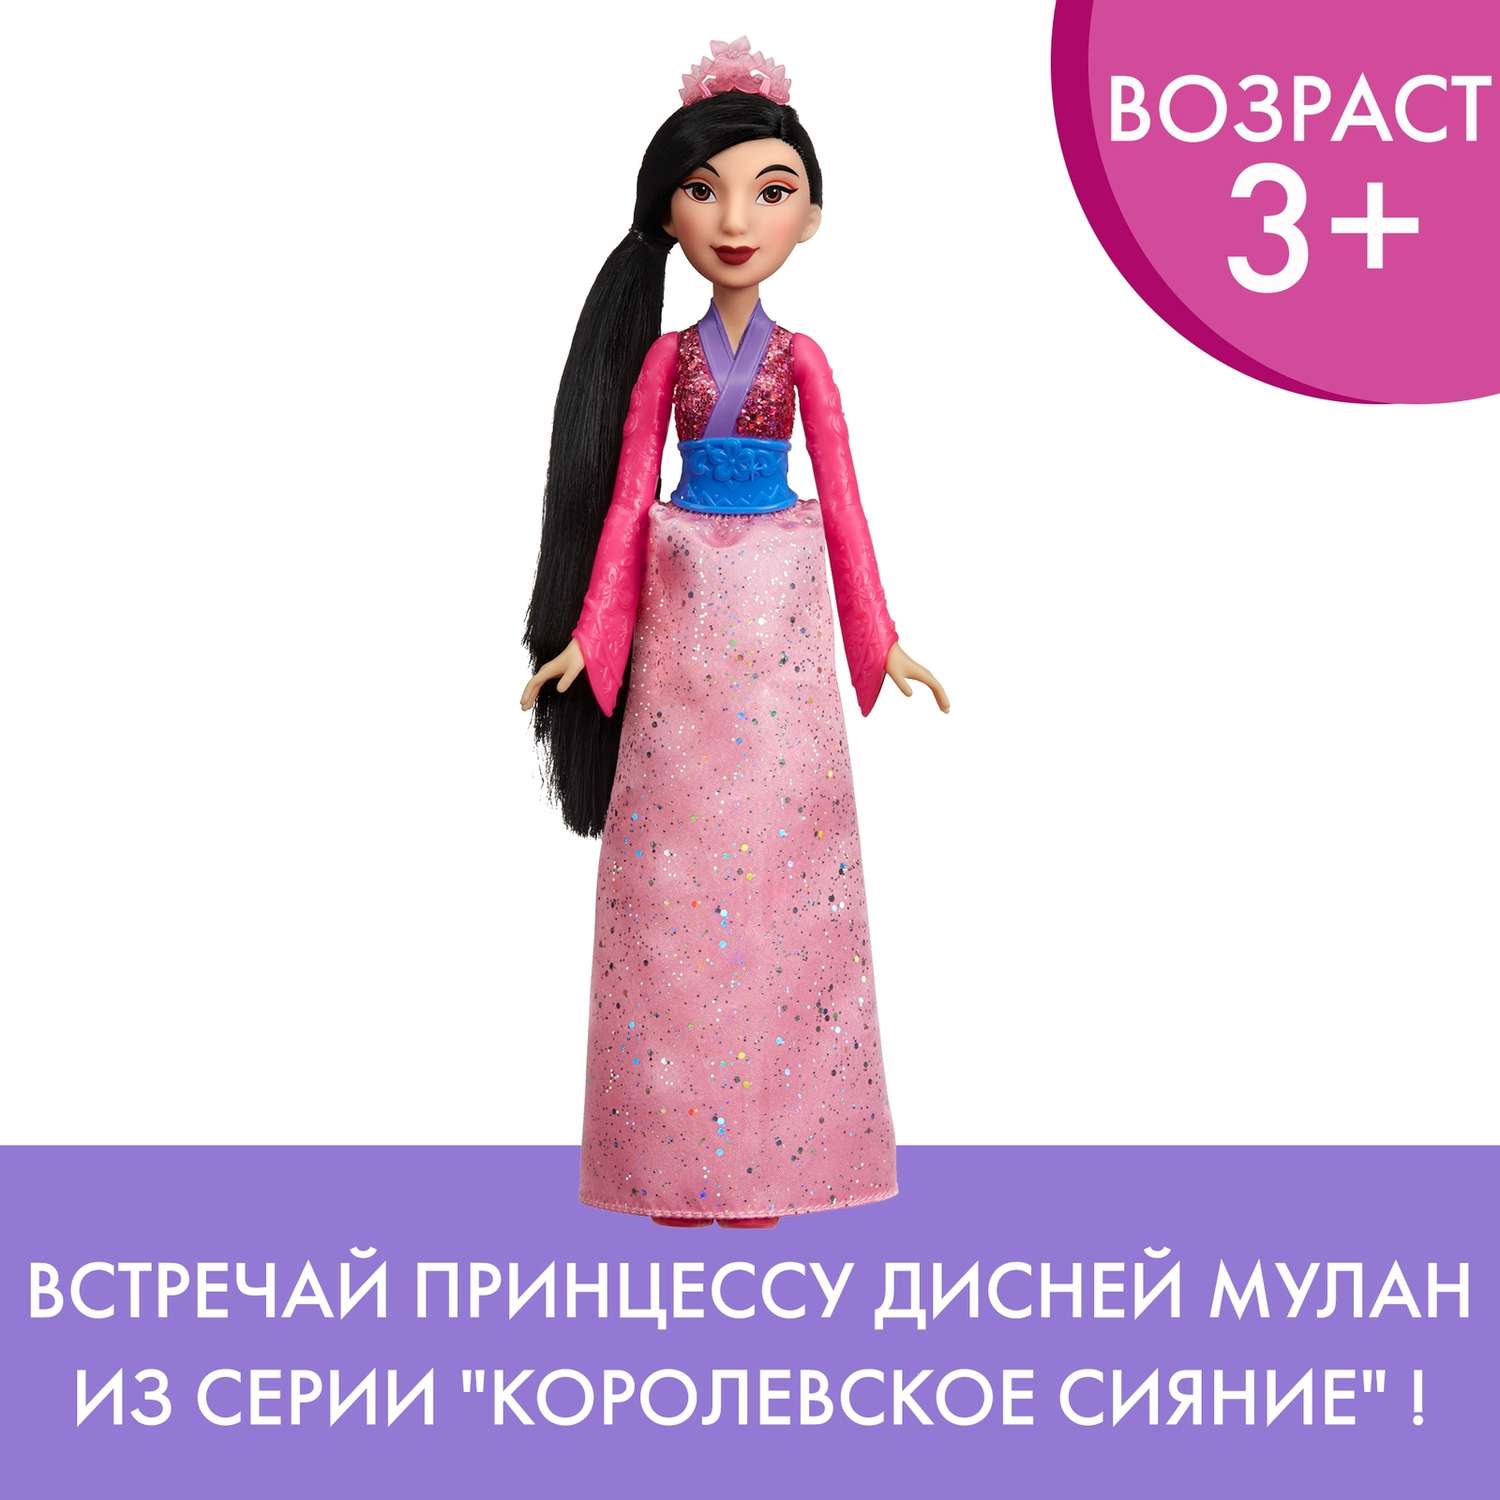 Кукла Disney Princess Hasbro C Мулан E4167EU4 E4022EU4 - фото 15